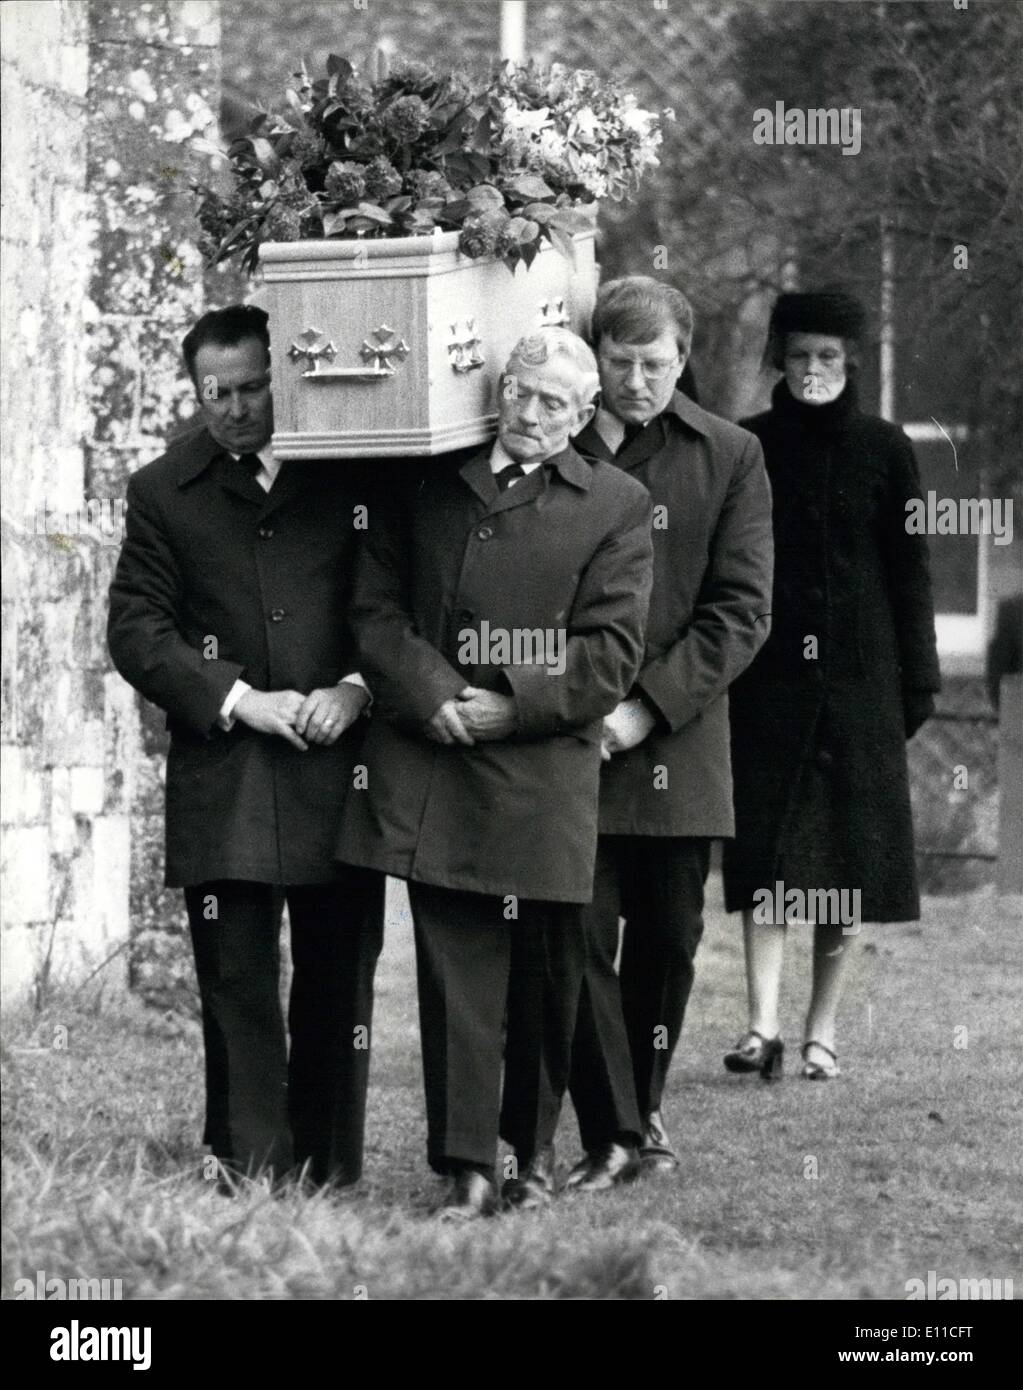 01 janvier 1977 - Lord Avon est enterré au cimetière du village local à Alvediston près de Salisbury : Lord Avon, l'ancien Premier Ministre, Sir Anthony Eden, a été enterré aujourd'hui dans le cimetière du village de Saint Mary's, l'église paroissiale à Alvediston, près de Salisbury. Il avait vécu dans le village pendant 10 ans avant sa mort vendredi dernier à l'âge de 79 ans. Photo montre dame Avon suit le cercueil à l'église de la Vierge Marie à Alvediston aujourd'hui. Banque D'Images